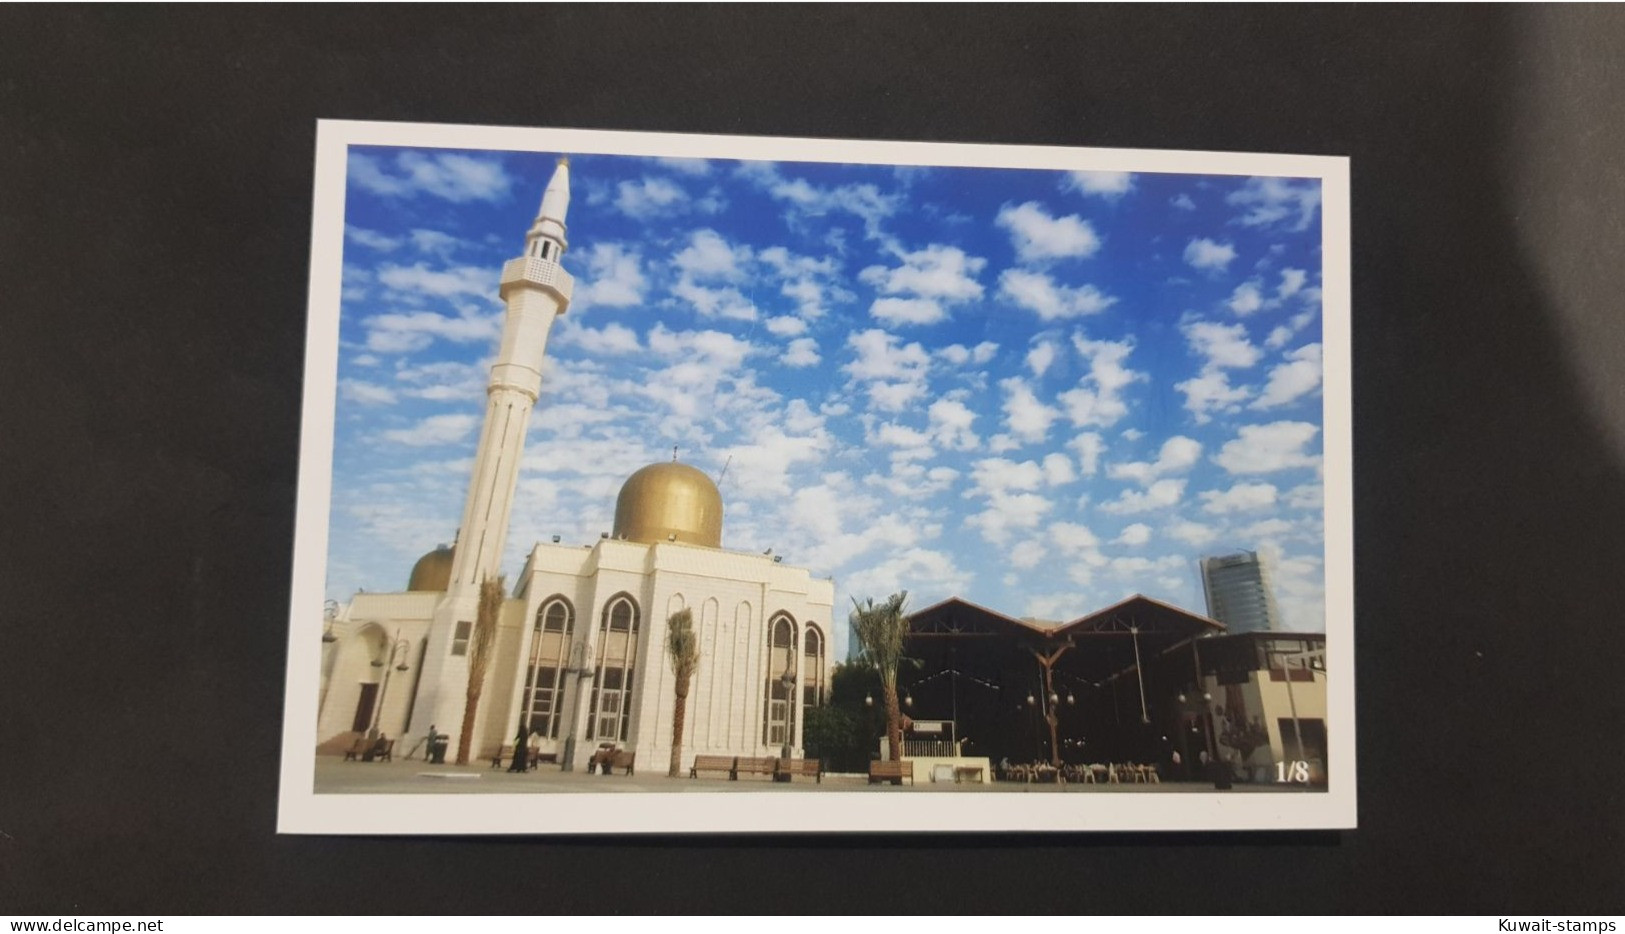 Postcard Al Mubarakiya- Bin Bahar Square 1/8 - Kuwait